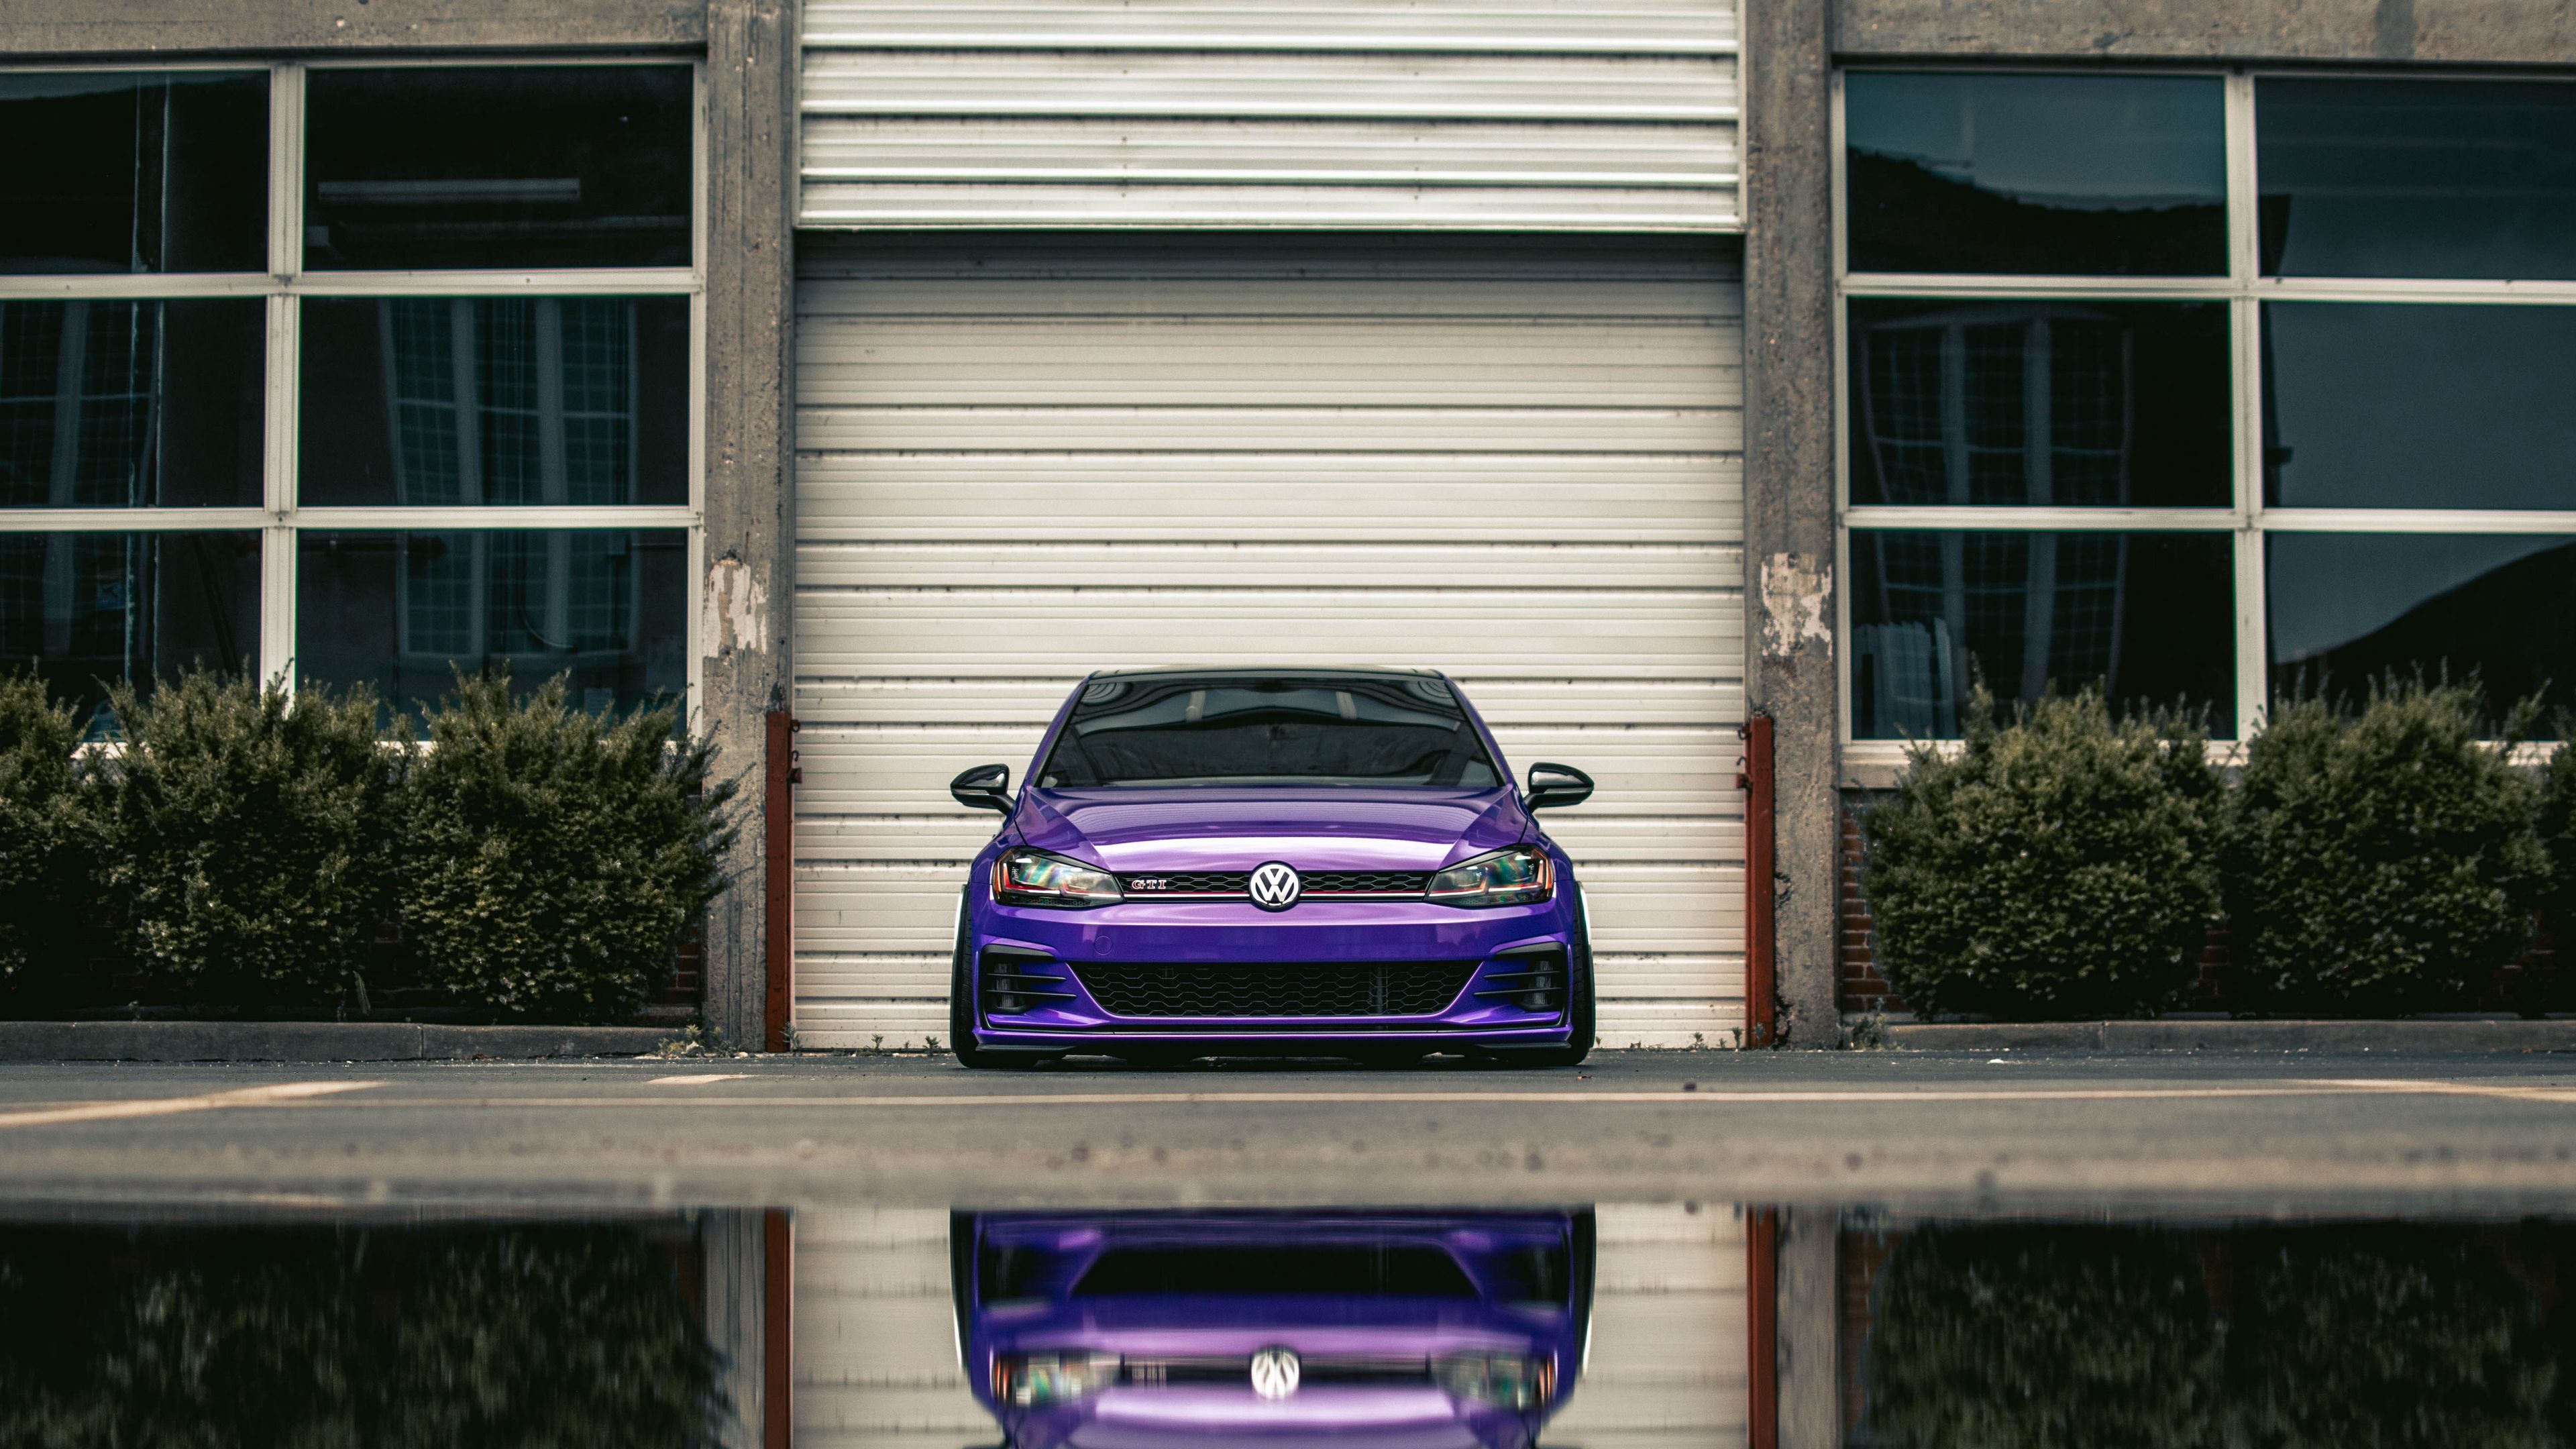 Volkswagen Gti Wallpapers